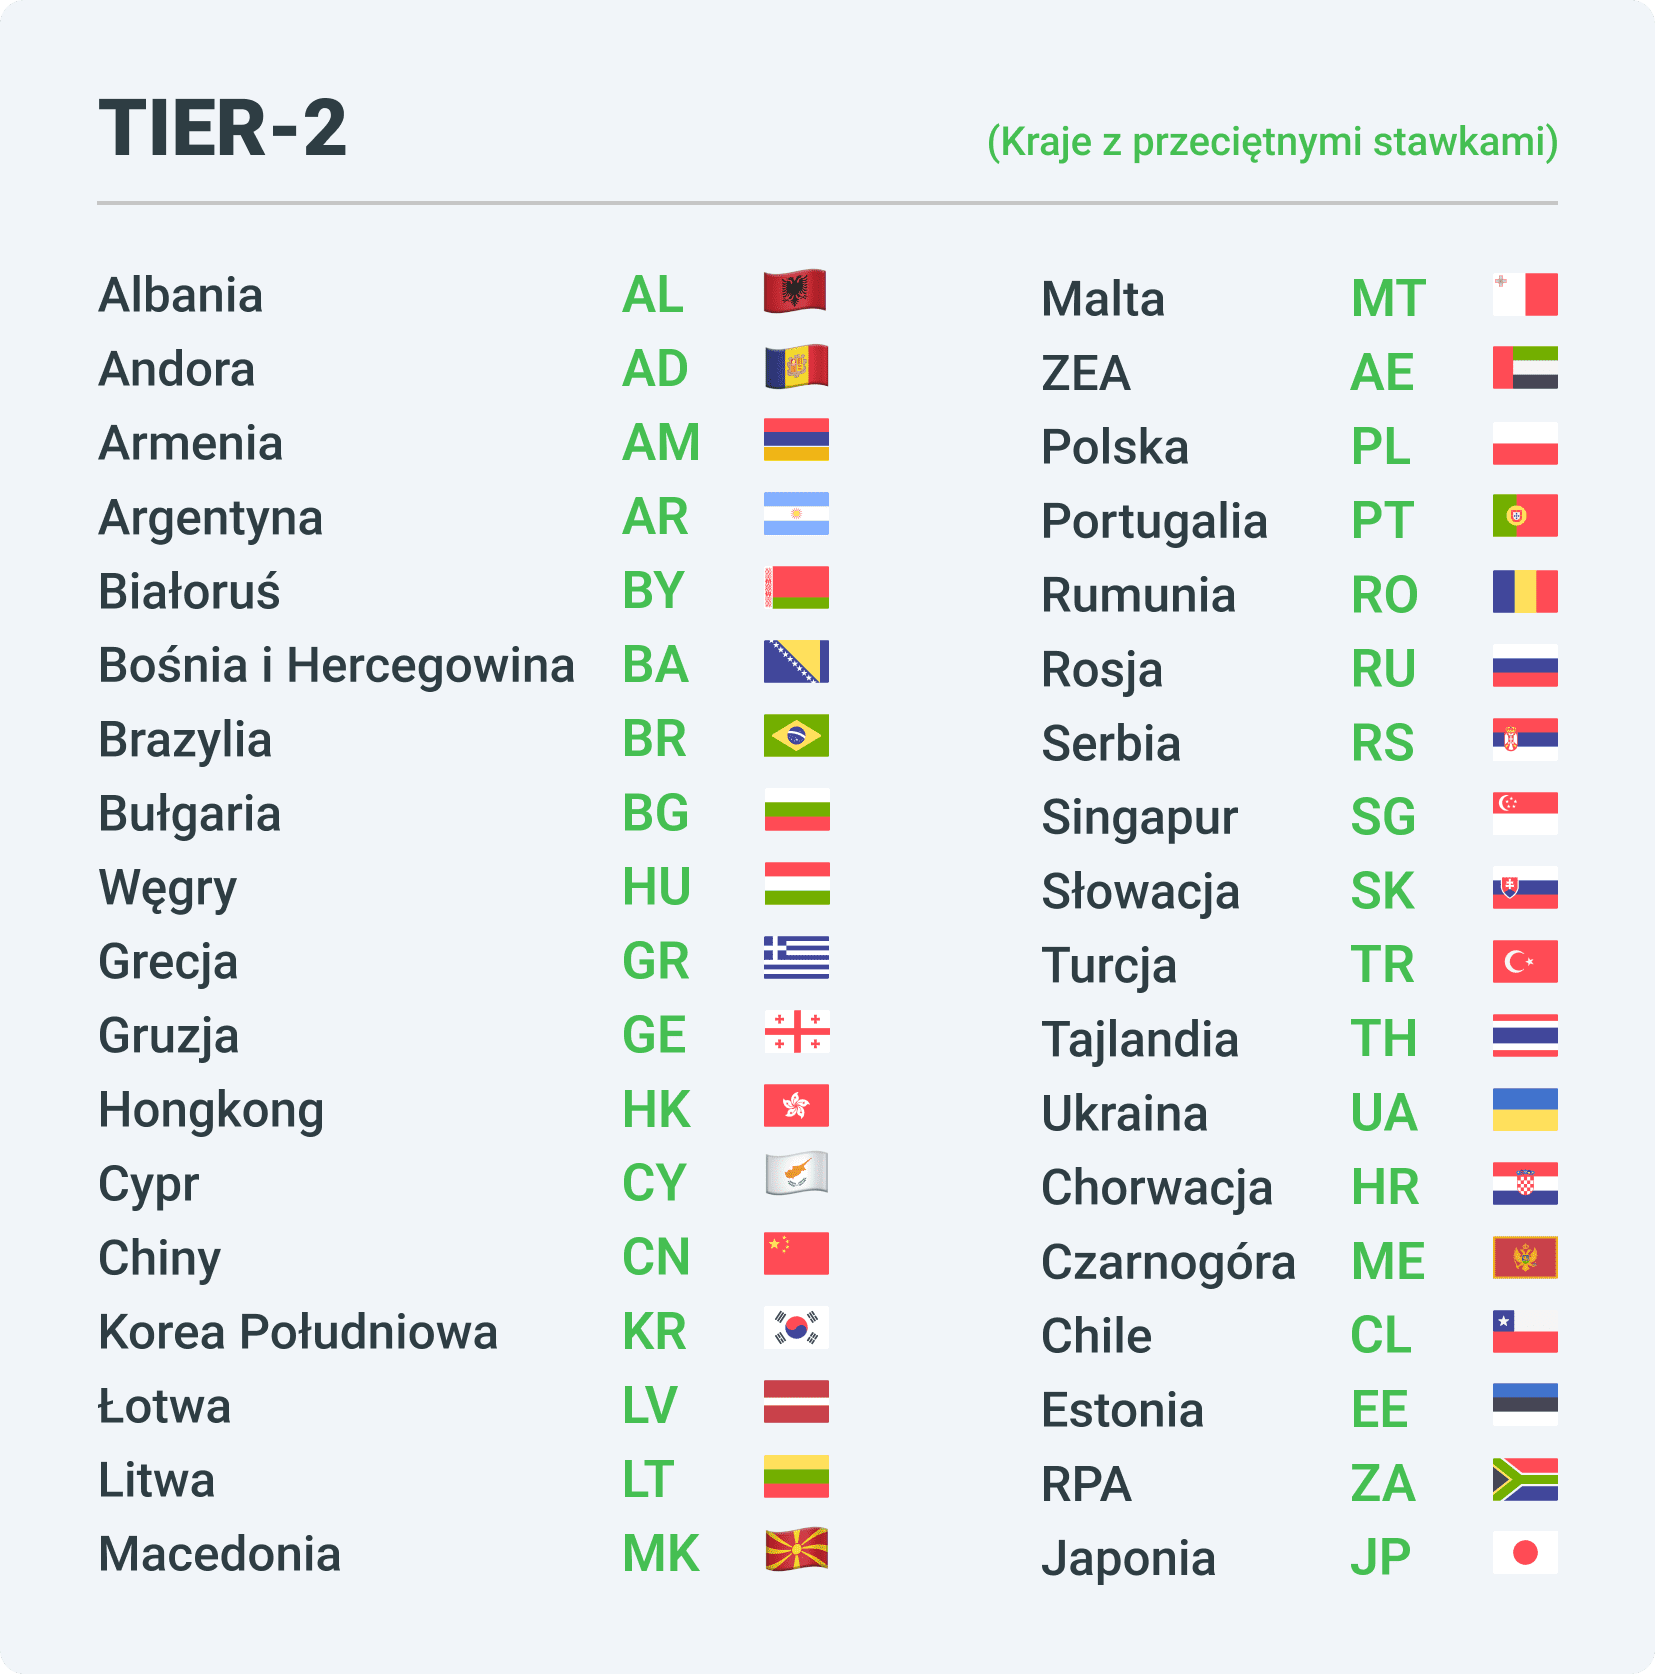 Kraje z grupy Tier-2